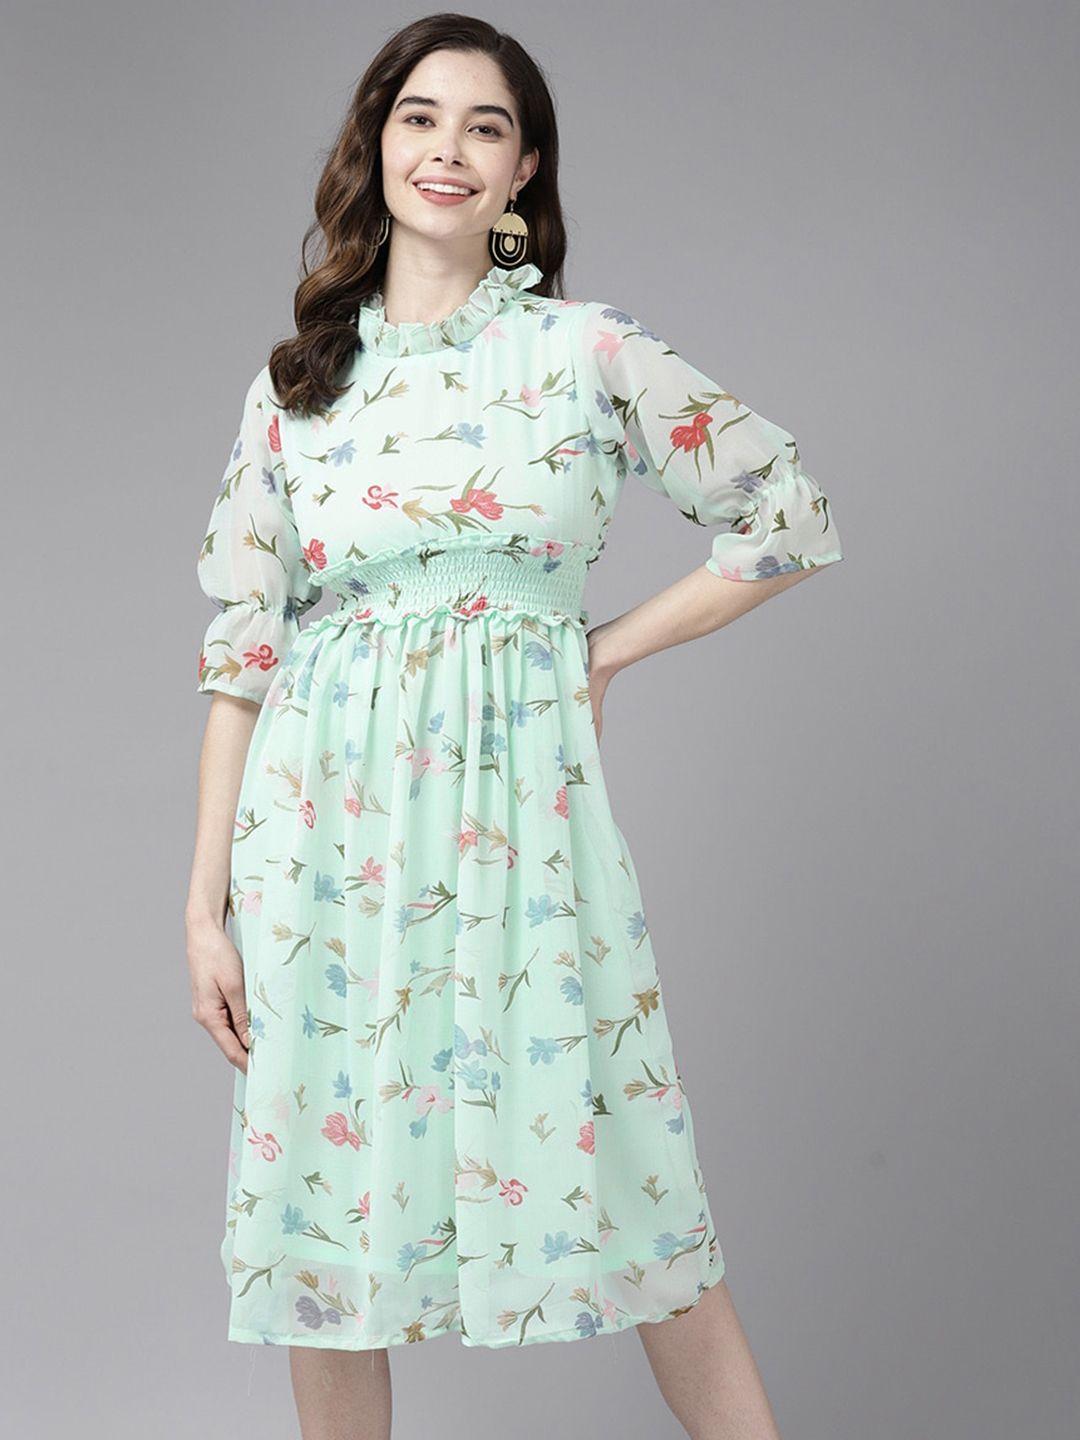 aarika-floral-printed-georgette-a-line-midi-dress